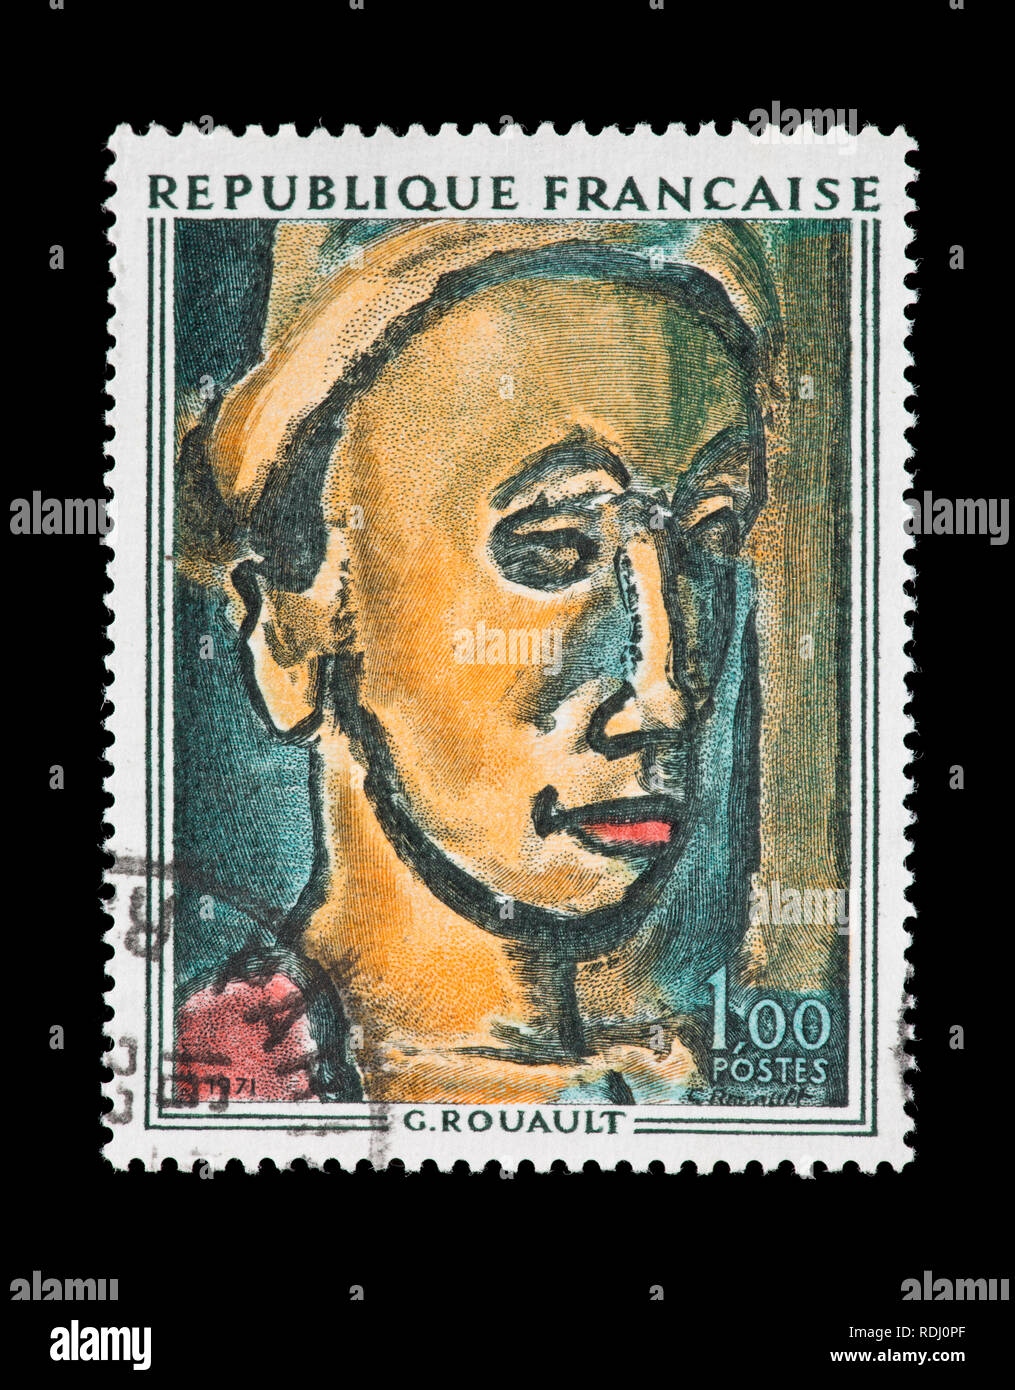 Timbre-poste de la France représentant le Georges Rouault peinture 'le Rêveur' Banque D'Images